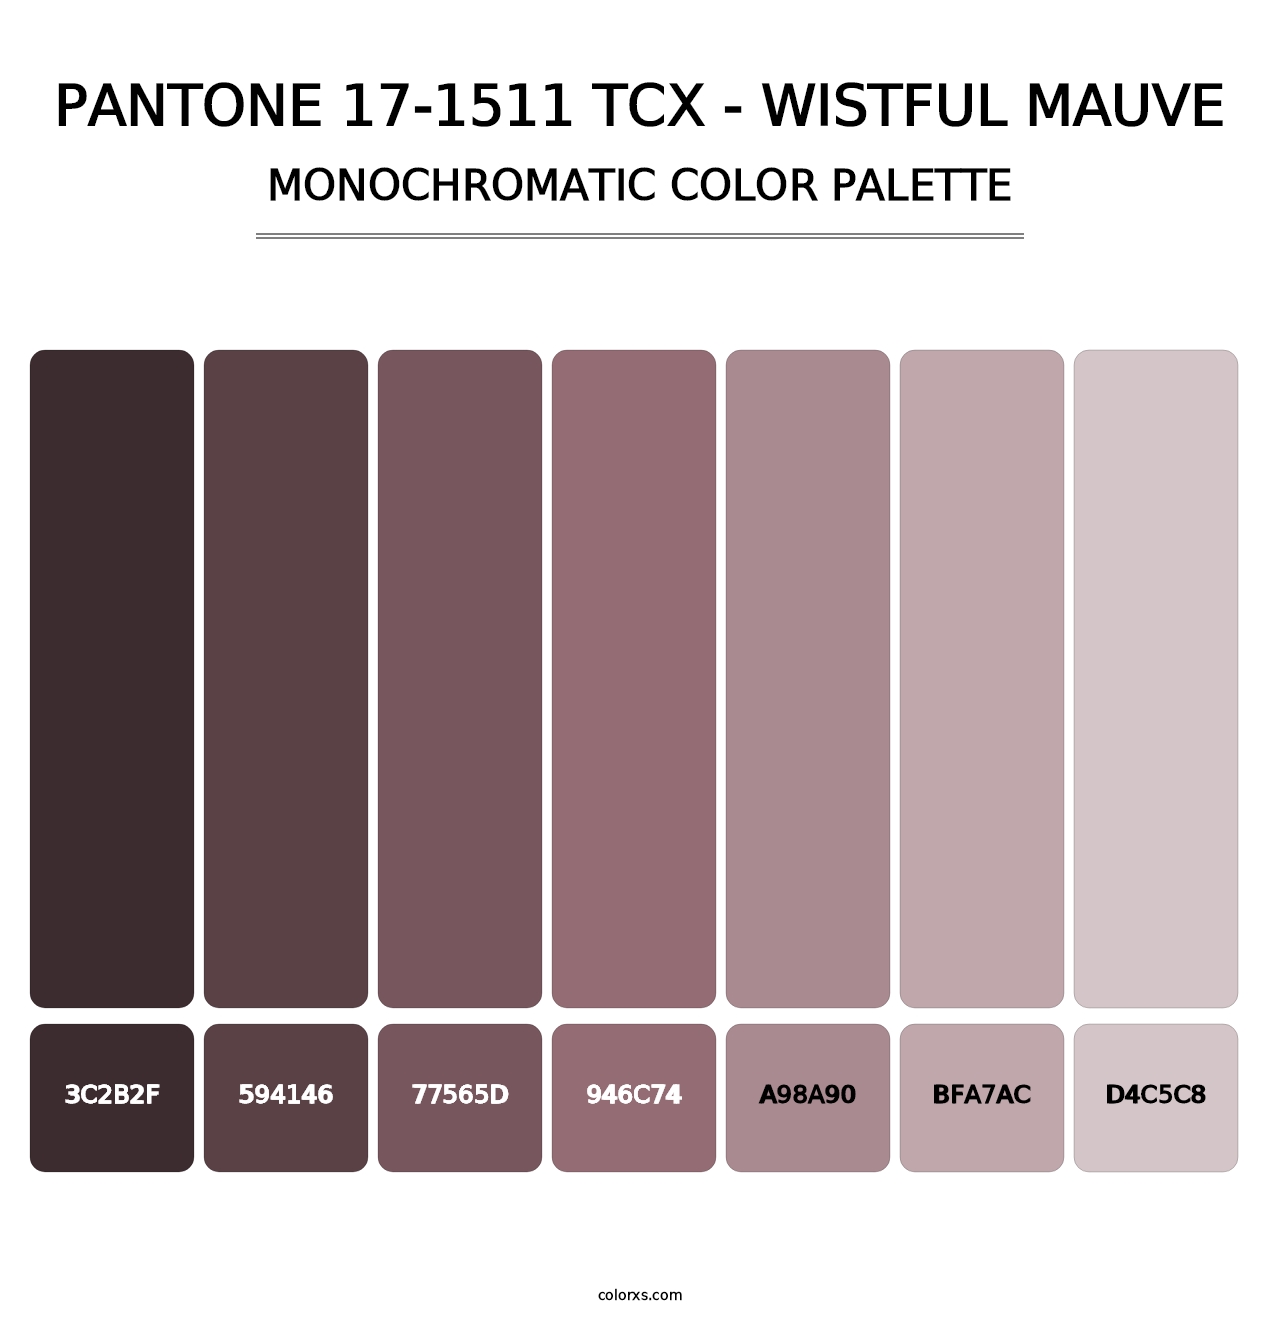 PANTONE 17-1511 TCX - Wistful Mauve - Monochromatic Color Palette